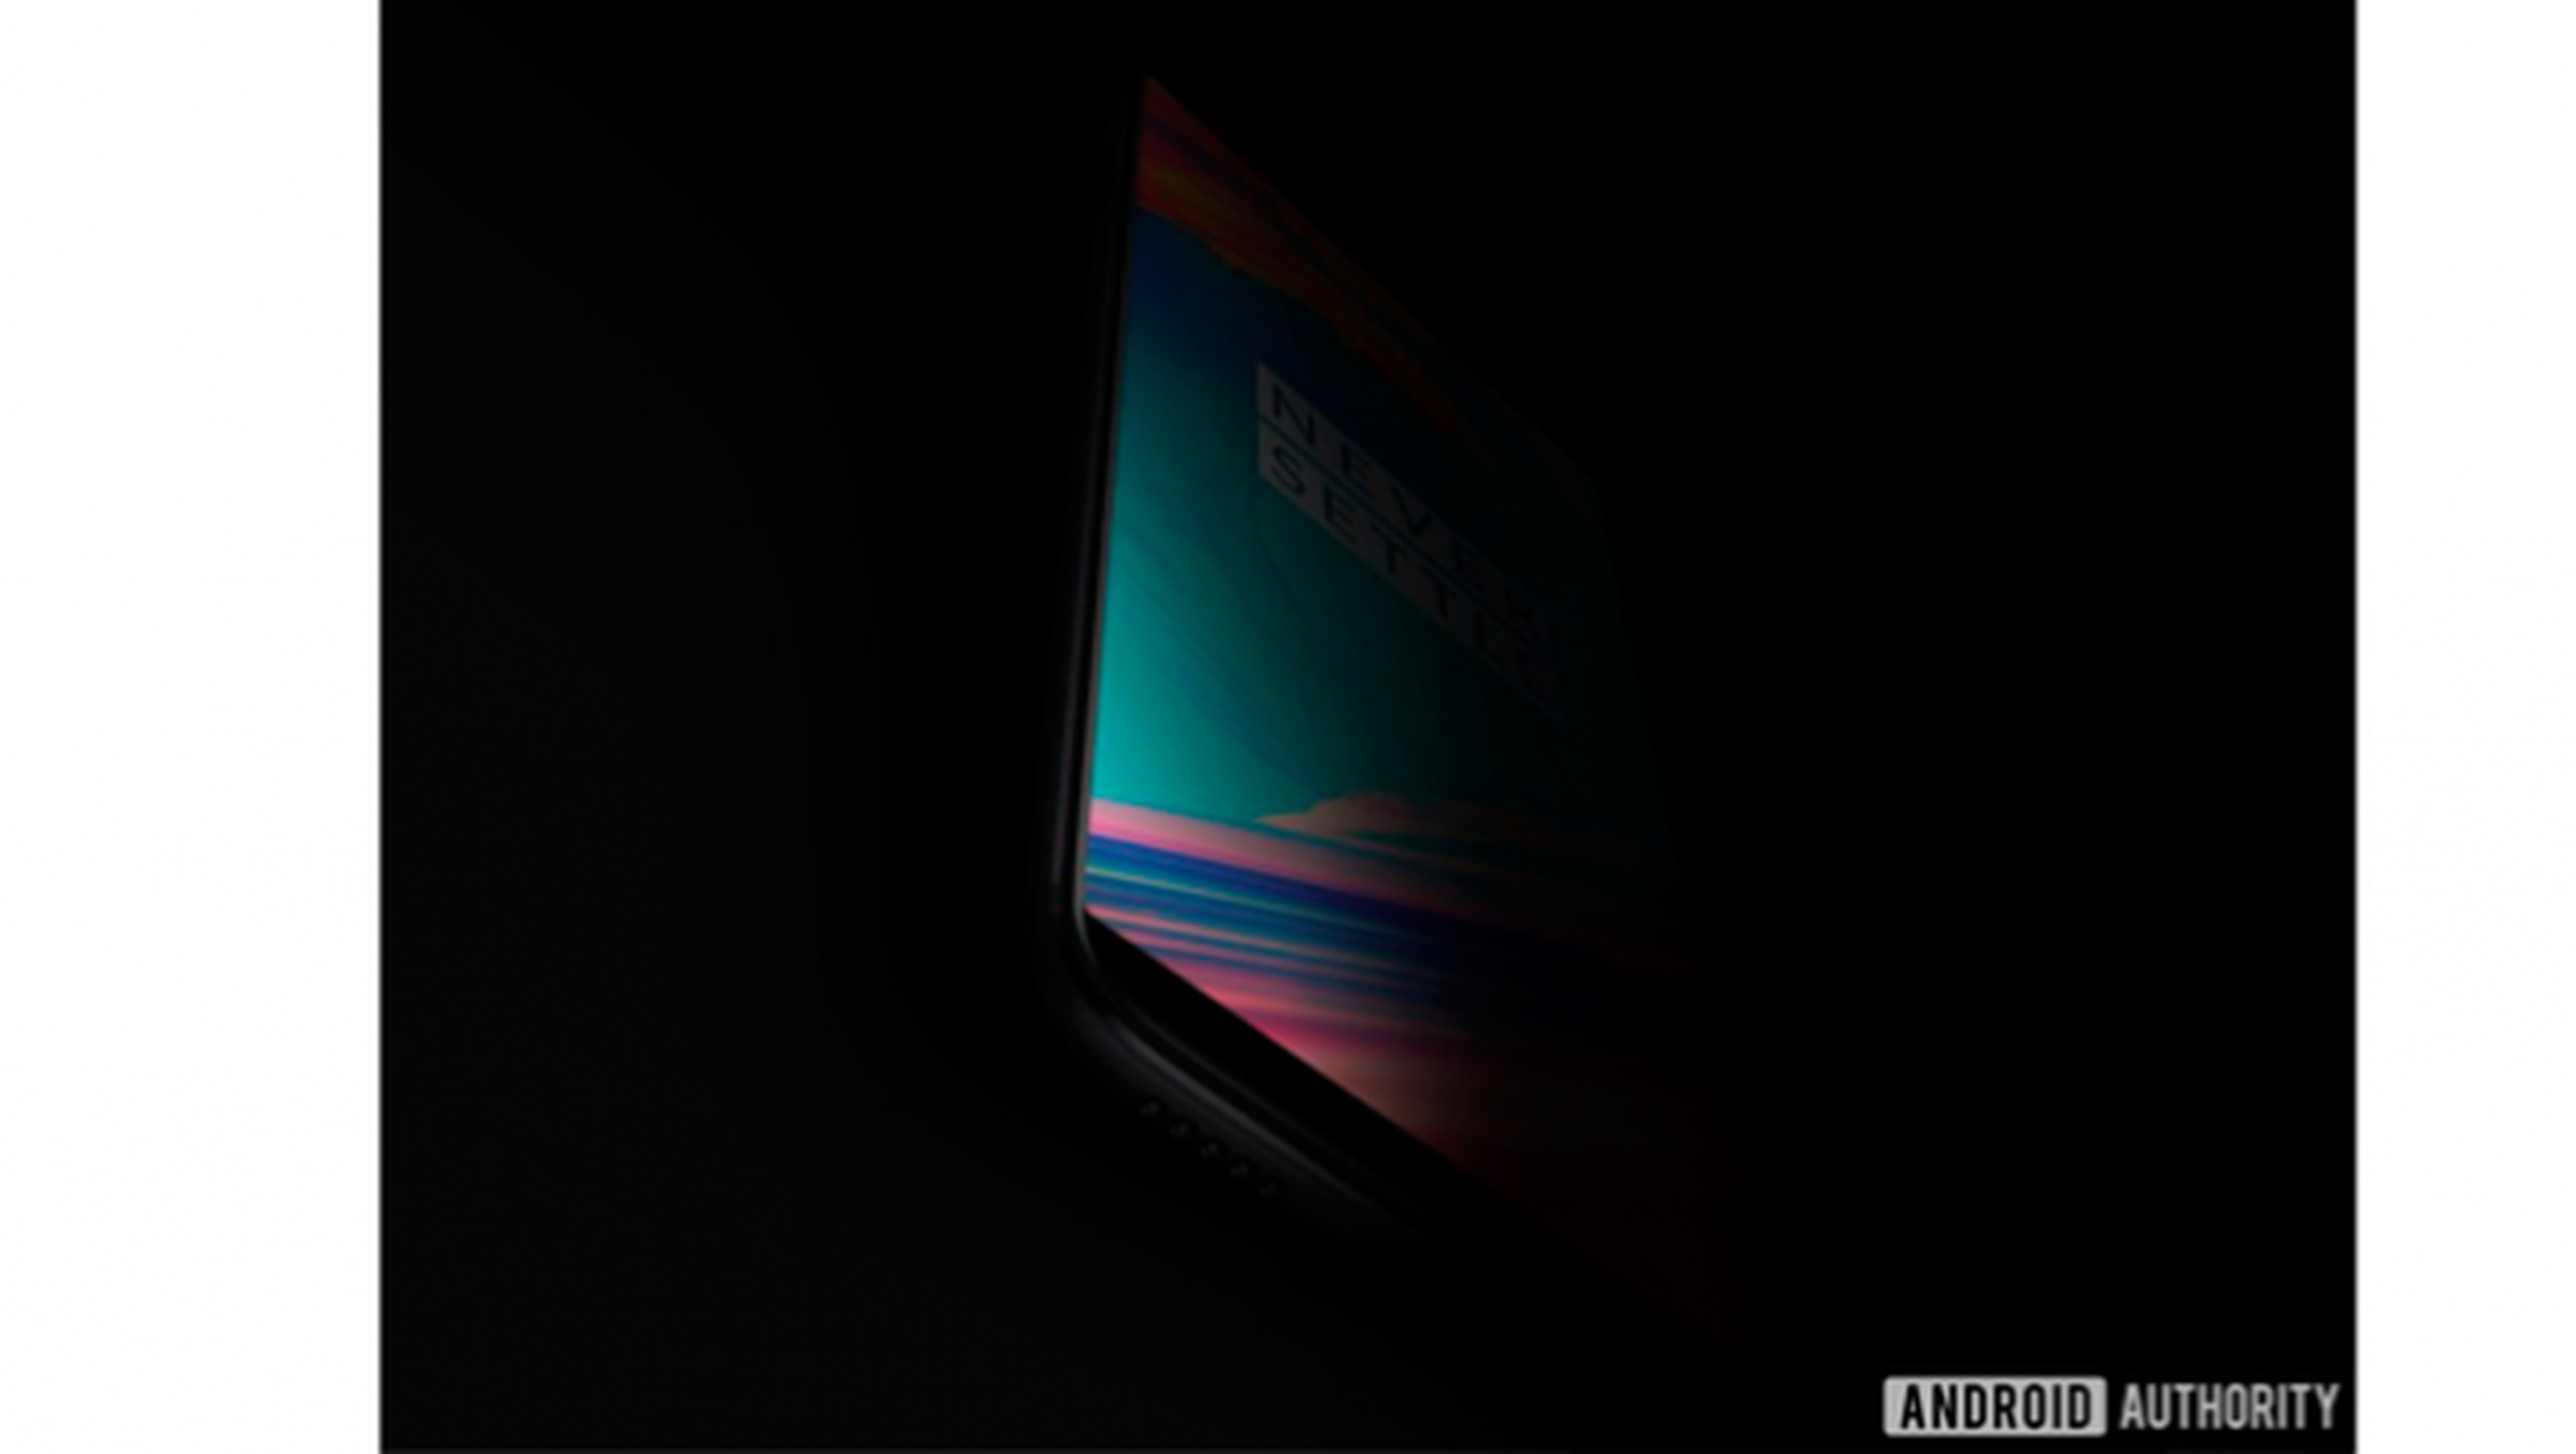 Filtrada imagen de la pantalla del OnePlus 5T